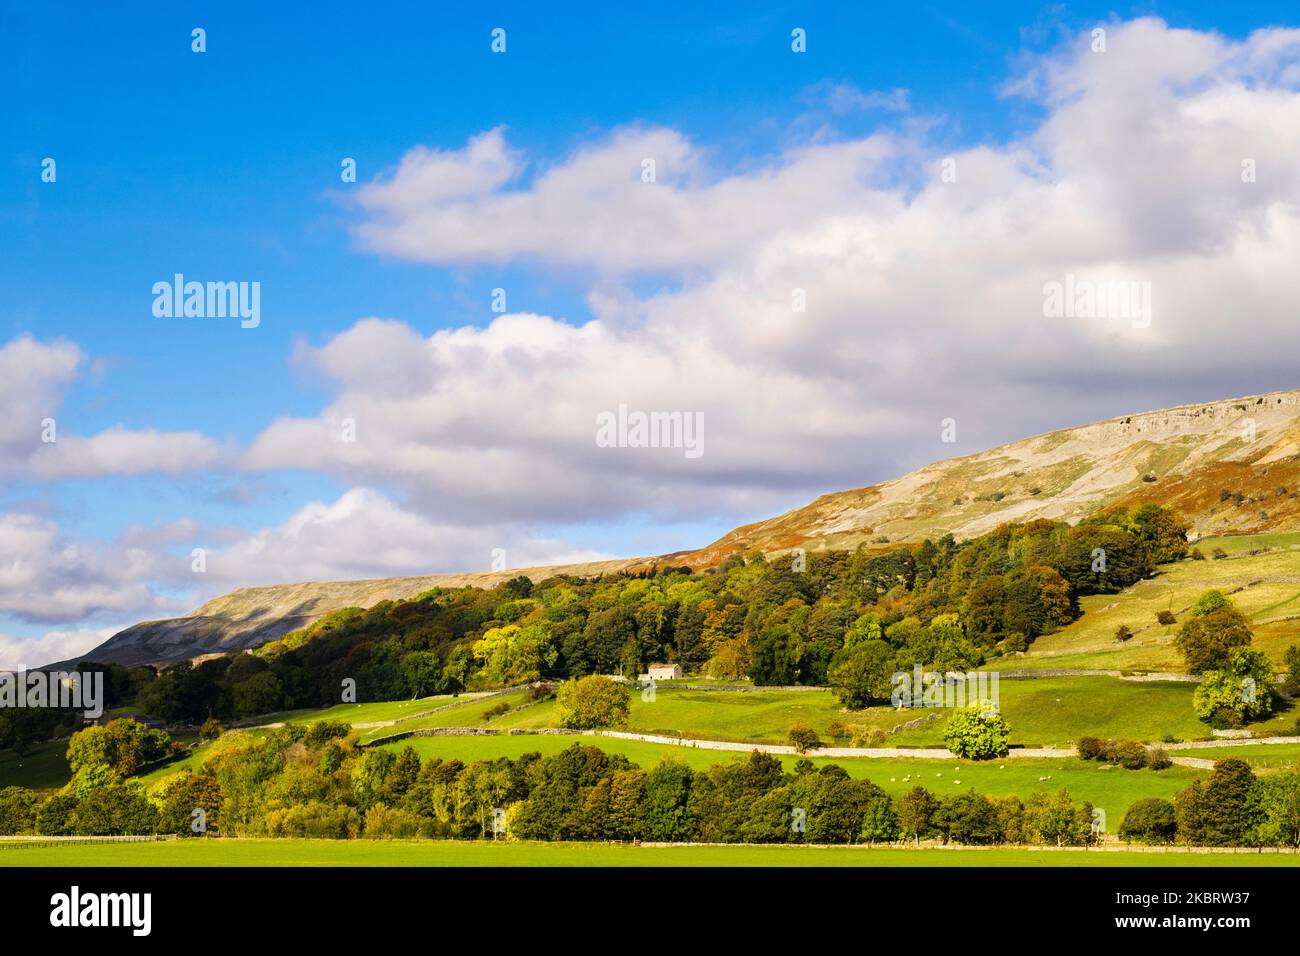 Campagne anglaise au-dessous d'un escarpement dans le parc national de Yorkshire Dales. Reeth, Richmond, Swaledale, Yorkshire du Nord, Angleterre, Royaume-Uni, Grande-Bretagne Banque D'Images